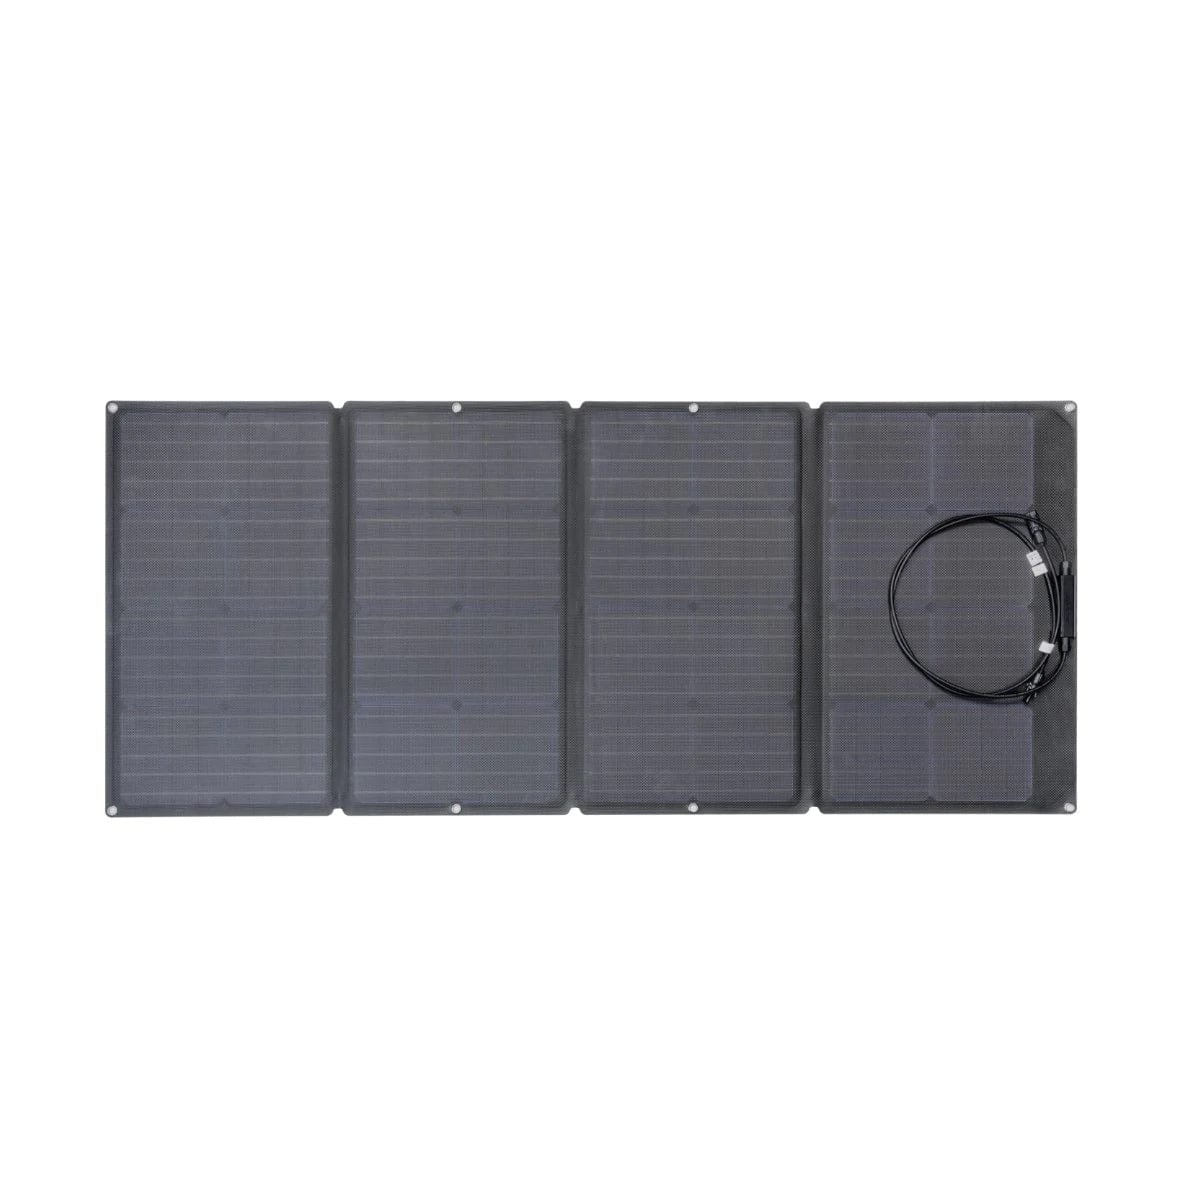 EcoFlow Delta 1000 + 4x 110W Solar Panel Solar Generator Kit